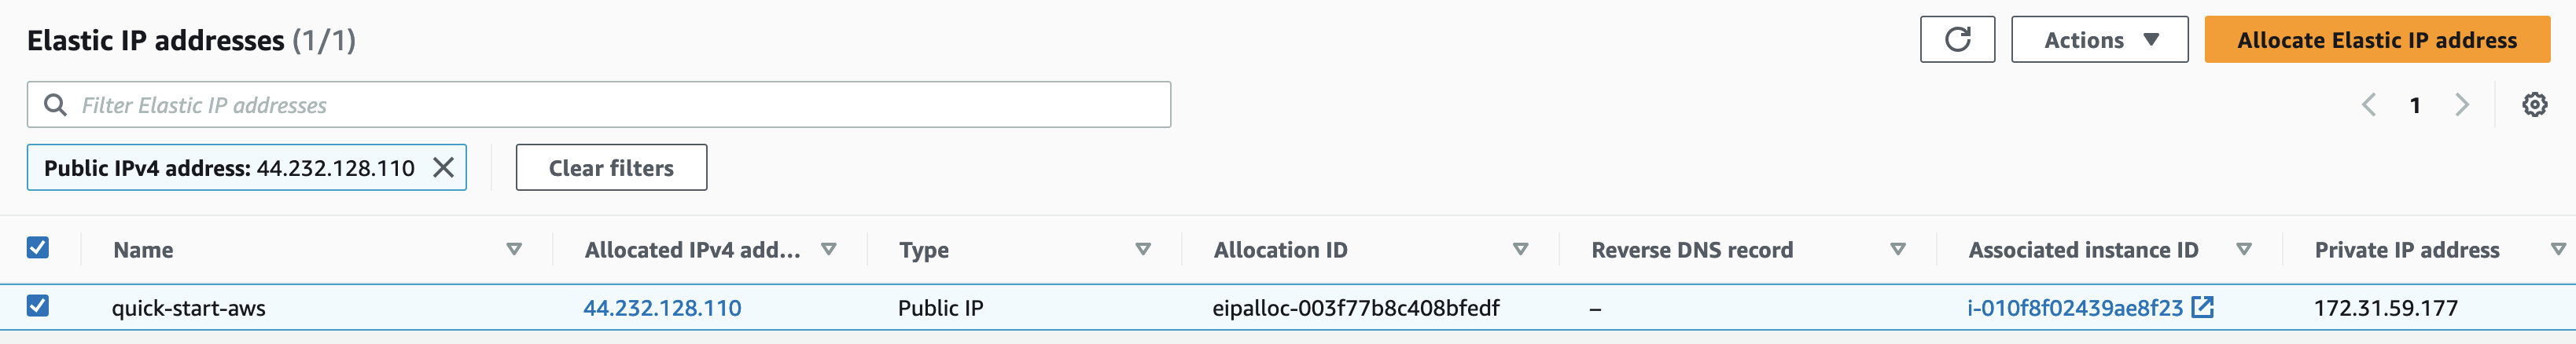 Elastic IP Confirmation